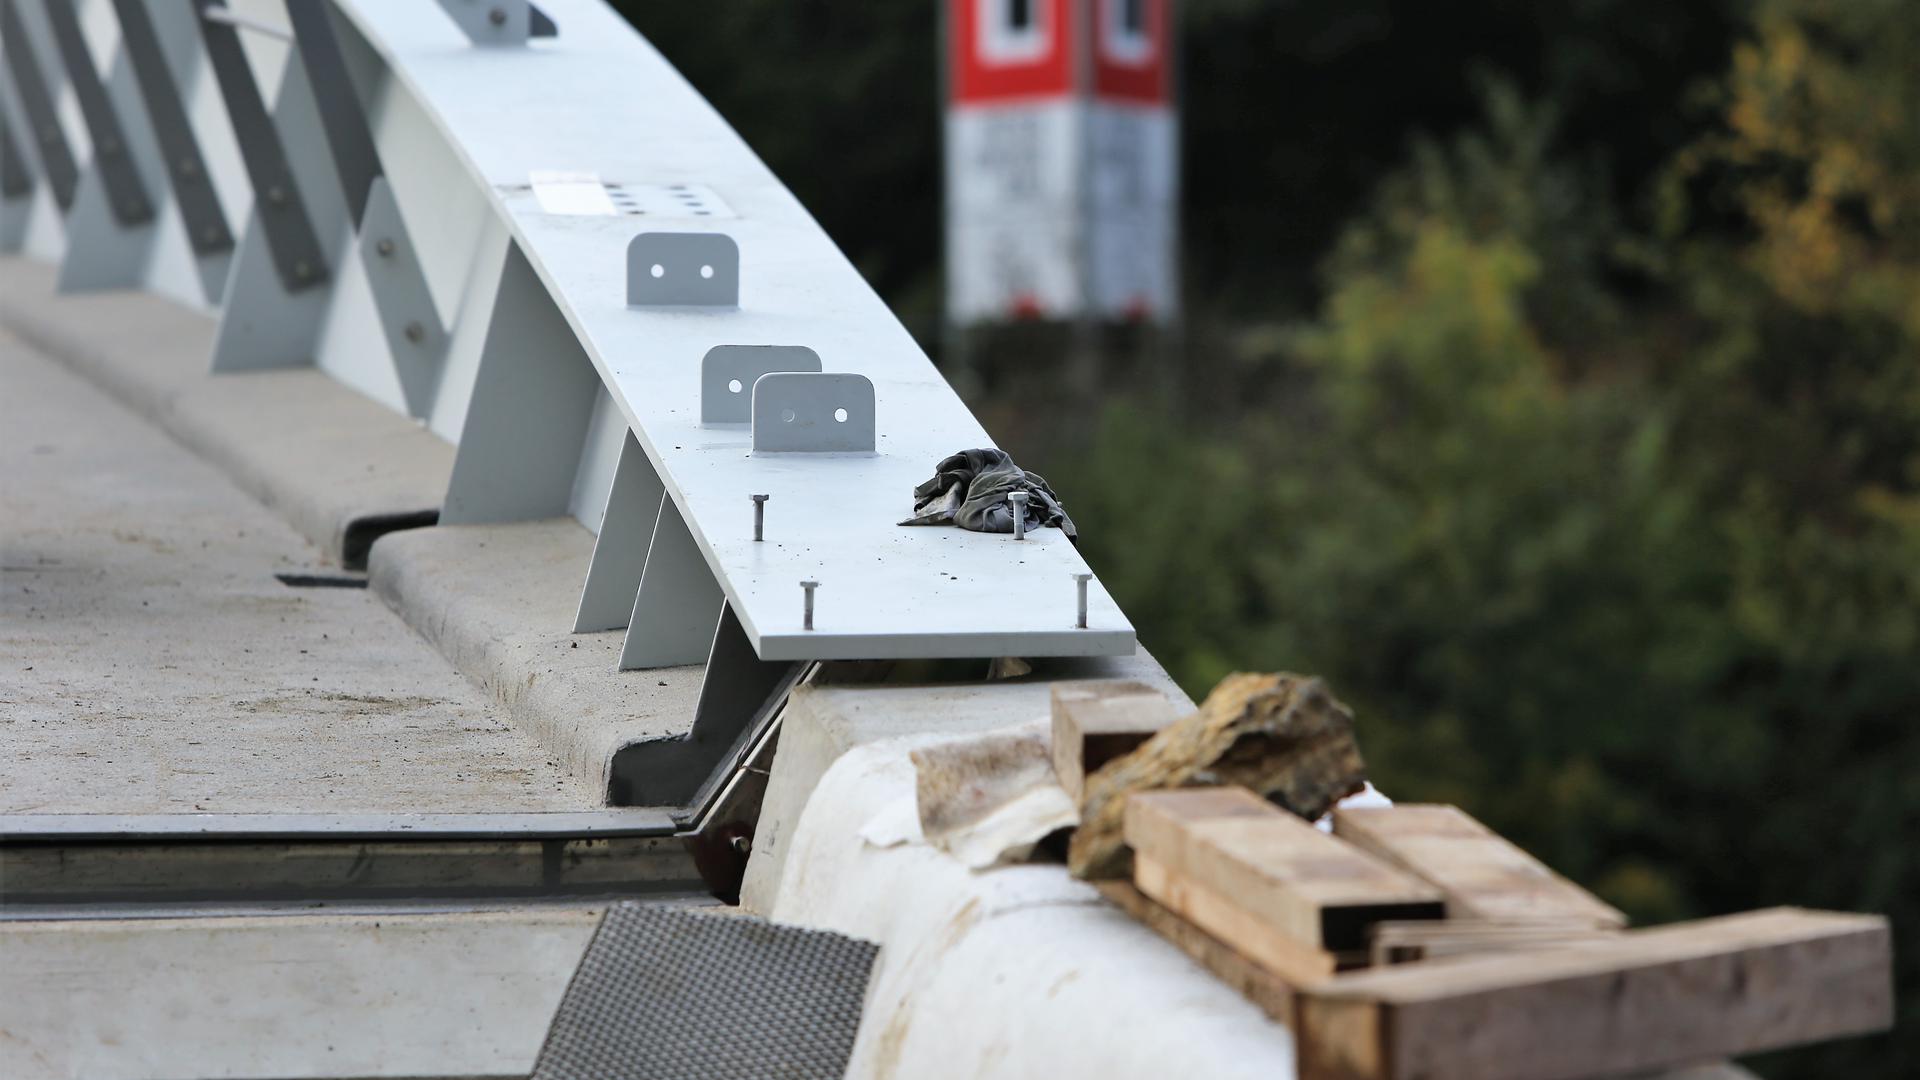 Das Geländer muss teilweise noch verschraubt werden, Werkzeug liegt noch herum. Die Brücke ist noch längst nicht freigegeben.